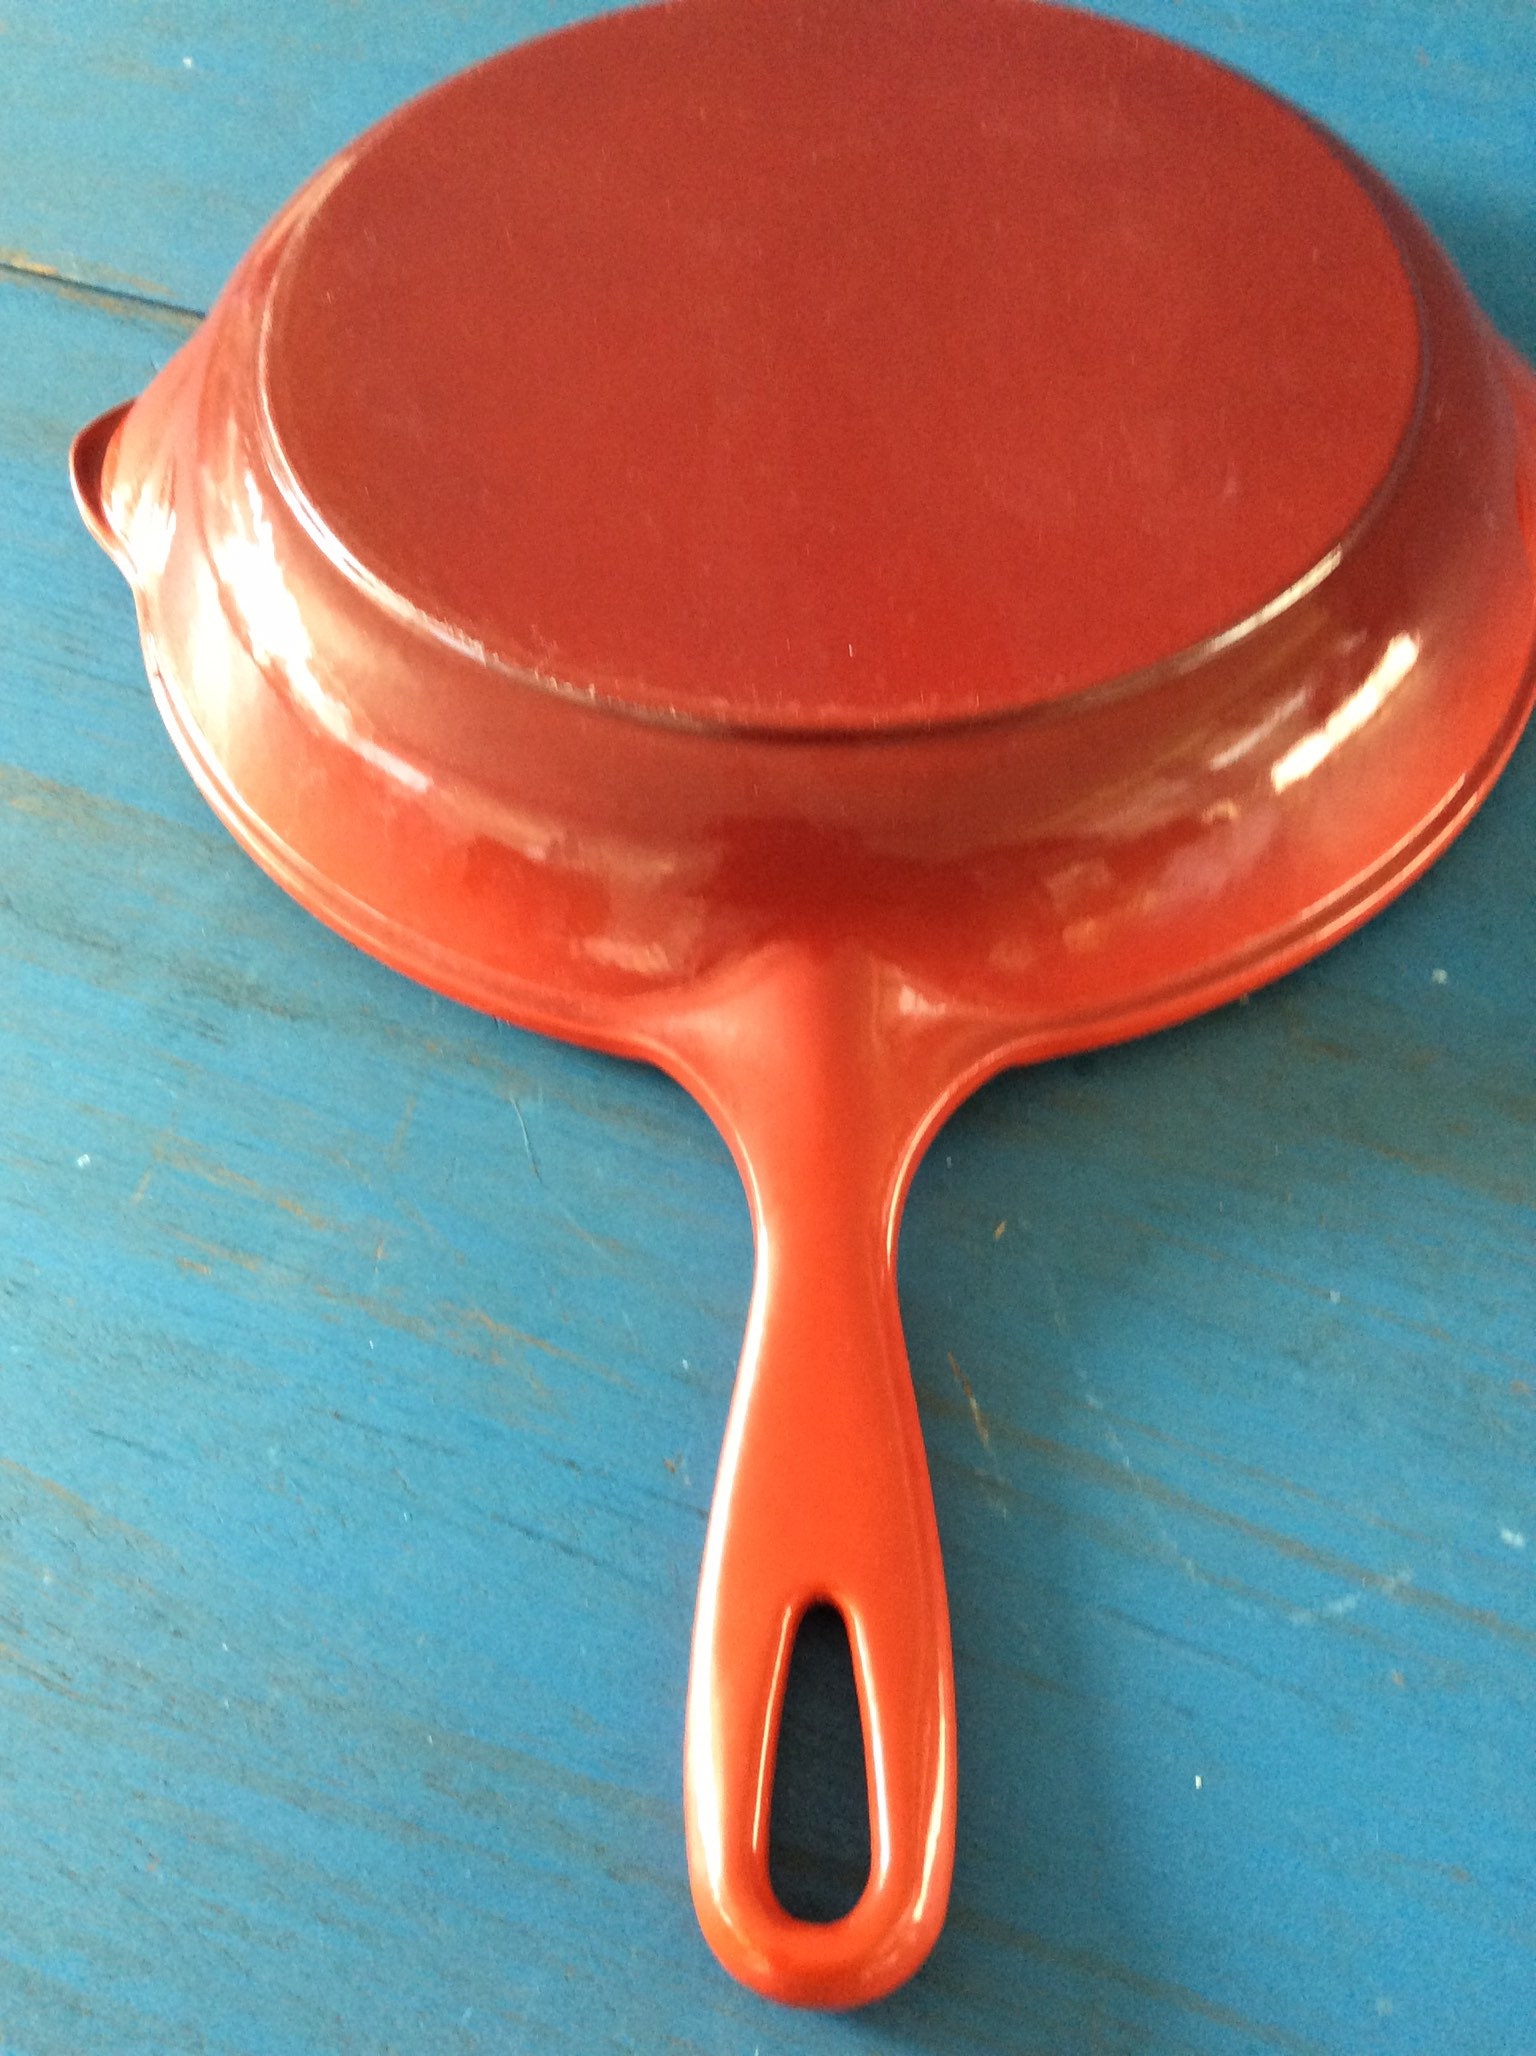 Vintage Le Creuset Small Cast Iron Enamel Skillet Fry Pan Flame Red Orange  -  Sweden